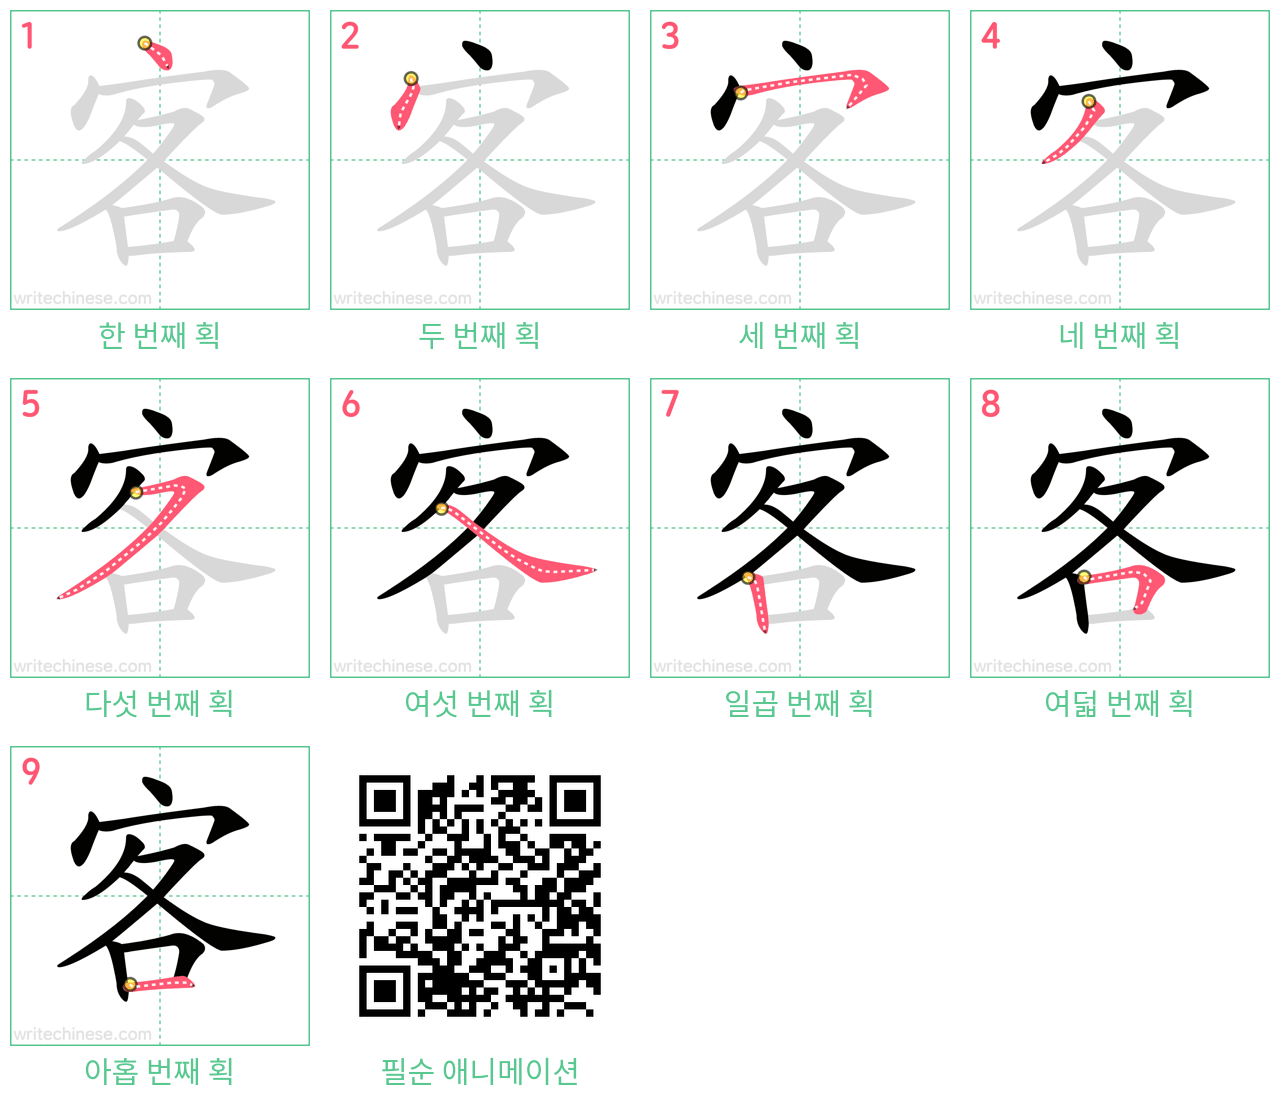 客 step-by-step stroke order diagrams